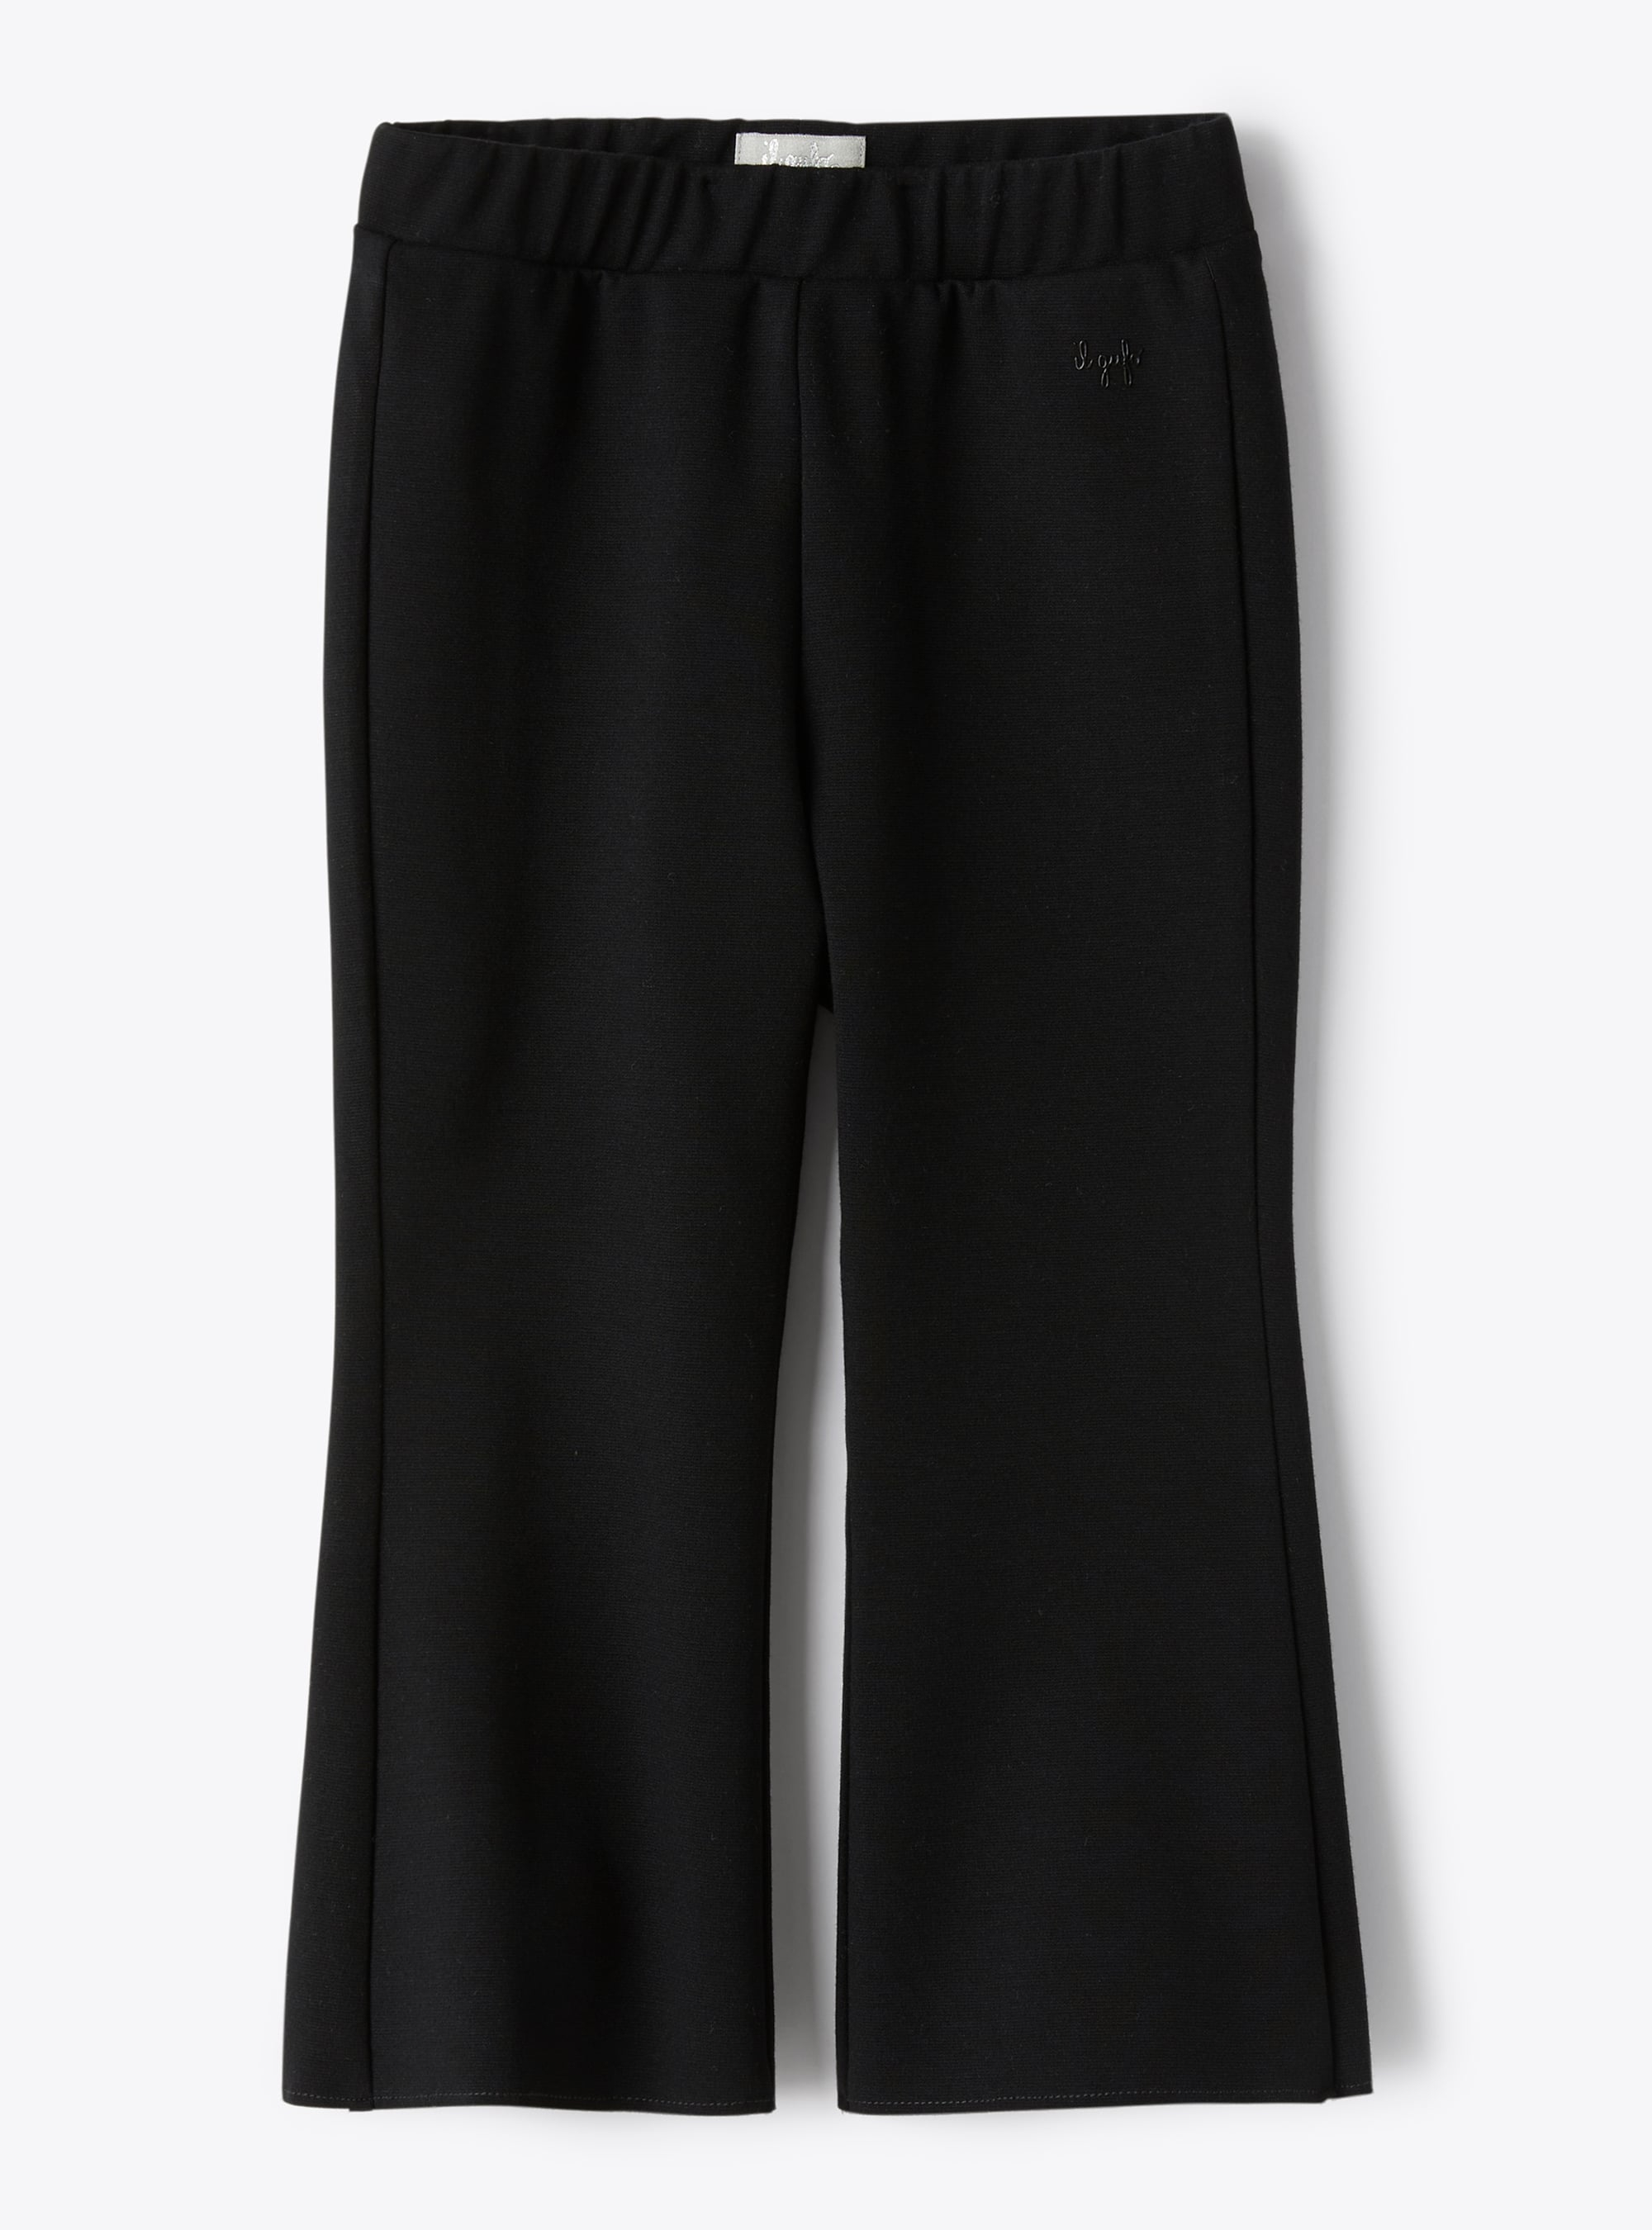 Trousers in black Milano-stitch fabric - Black | Il Gufo